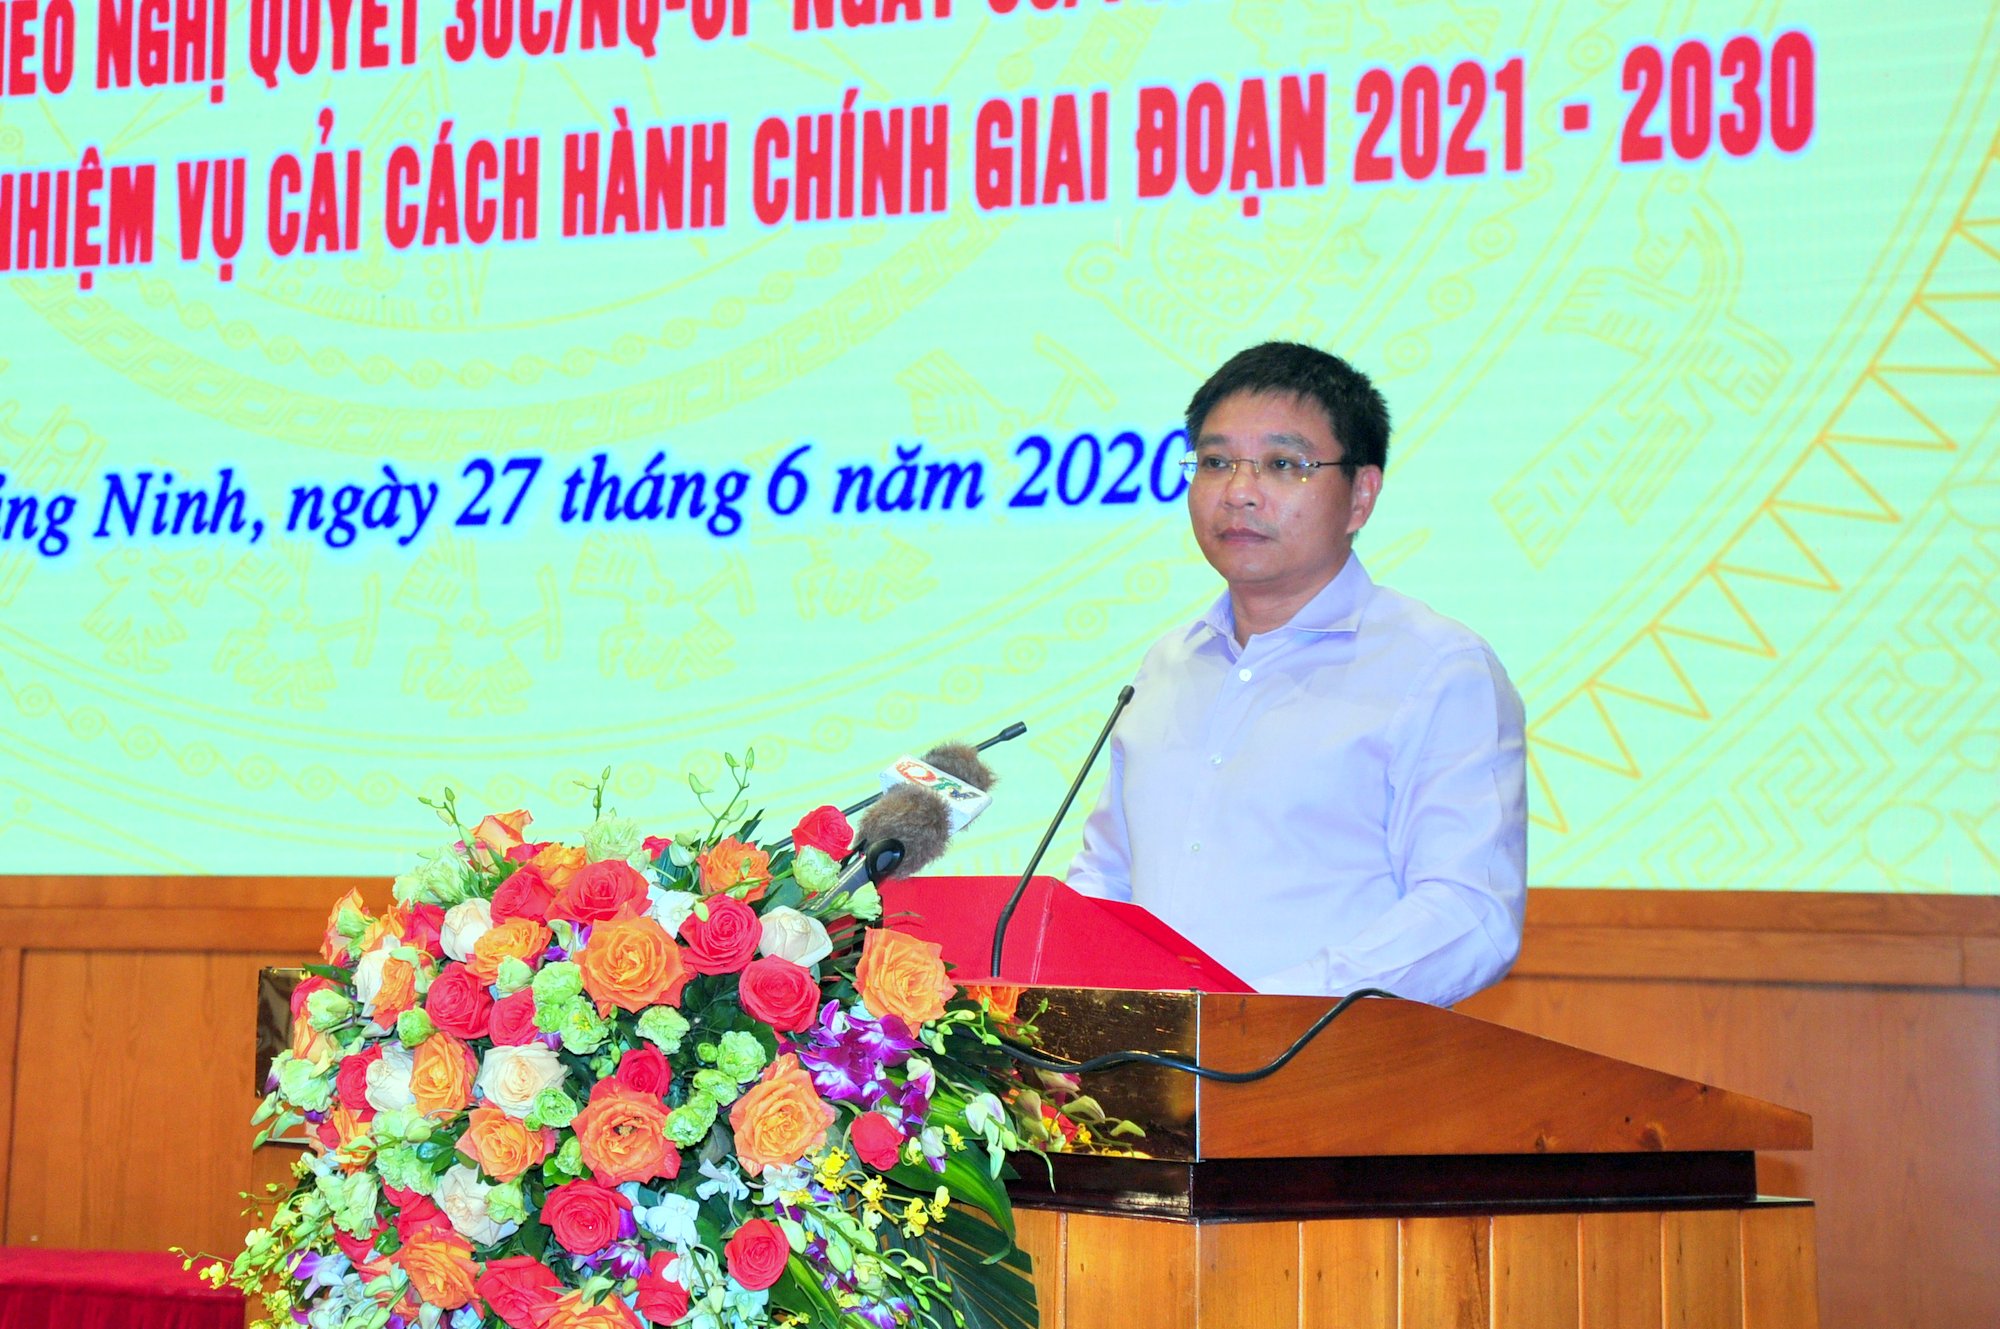 Đồng chí Nguyễn Văn Thắng, Phó Bí thư Tỉnh ủy, Chủ tịch UBND tỉnh phát biểu kết luận, tại cuộc làm việc với Sở VHTT tỉnh.